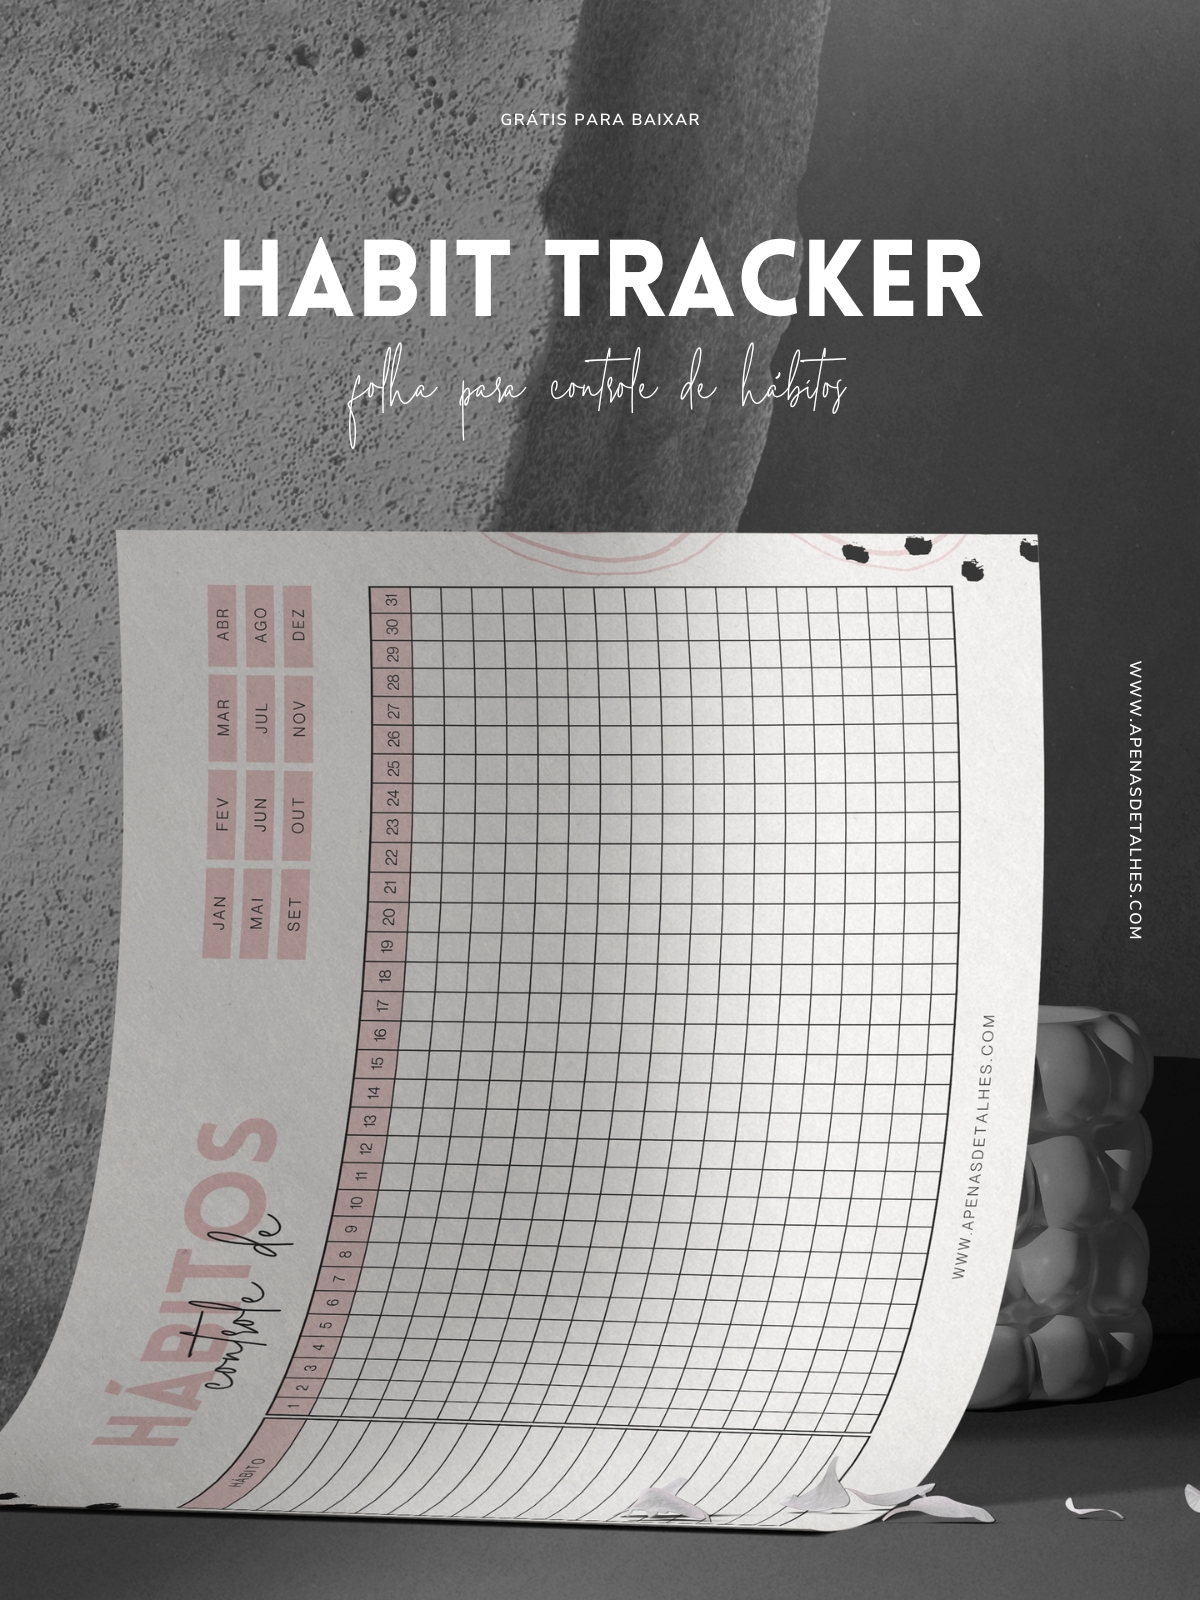 Habit tracker (rastreador de hábitos) grátis para baixar